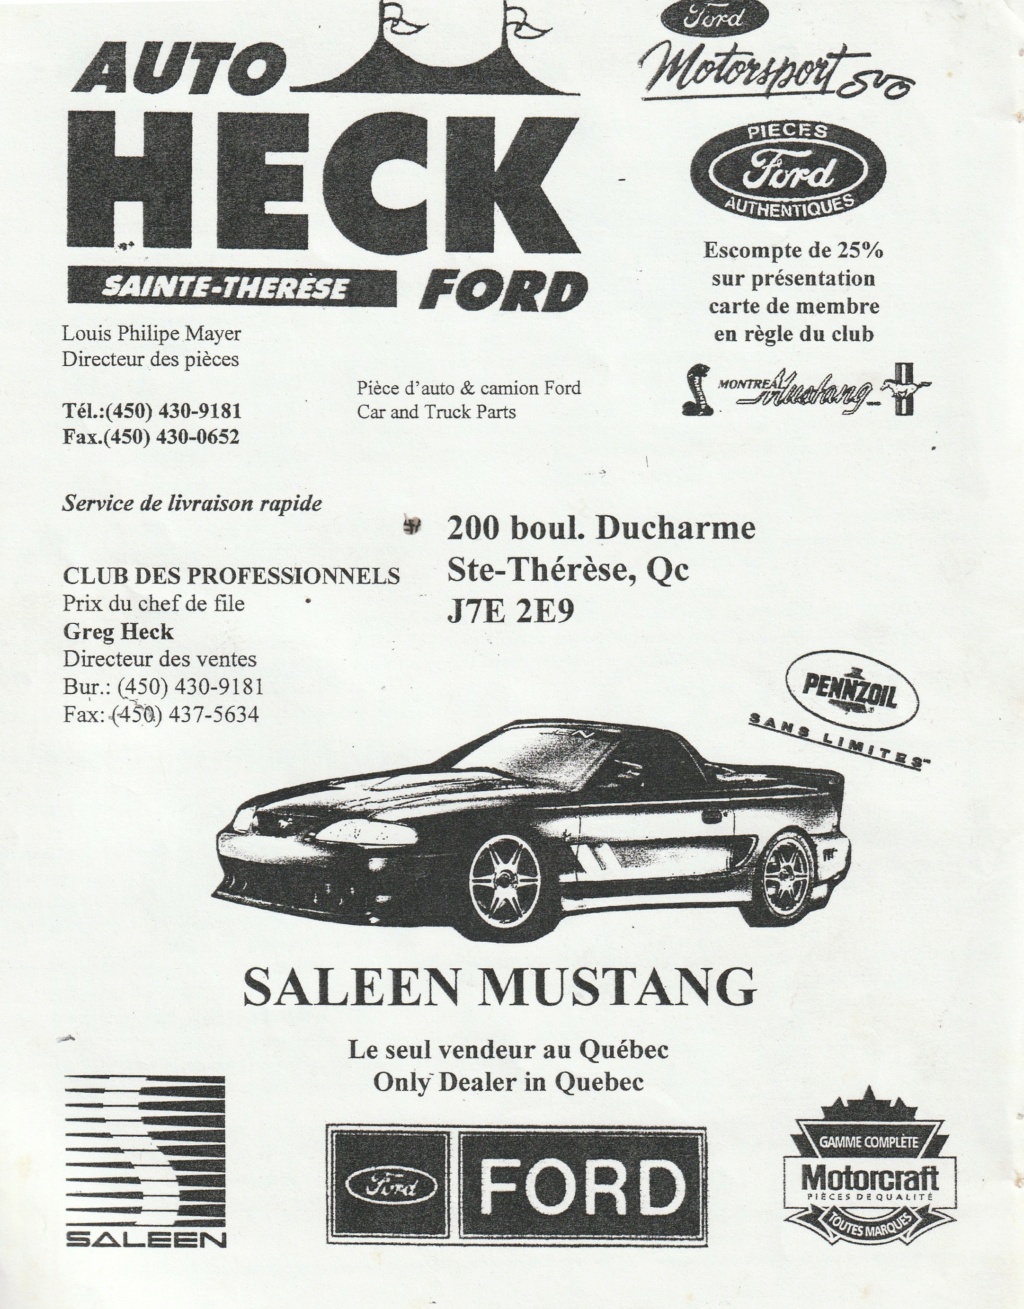 Montréal Mustang dans le temps! 1981 à aujourd'hui (Histoire en photos) - Page 8 Img_2510